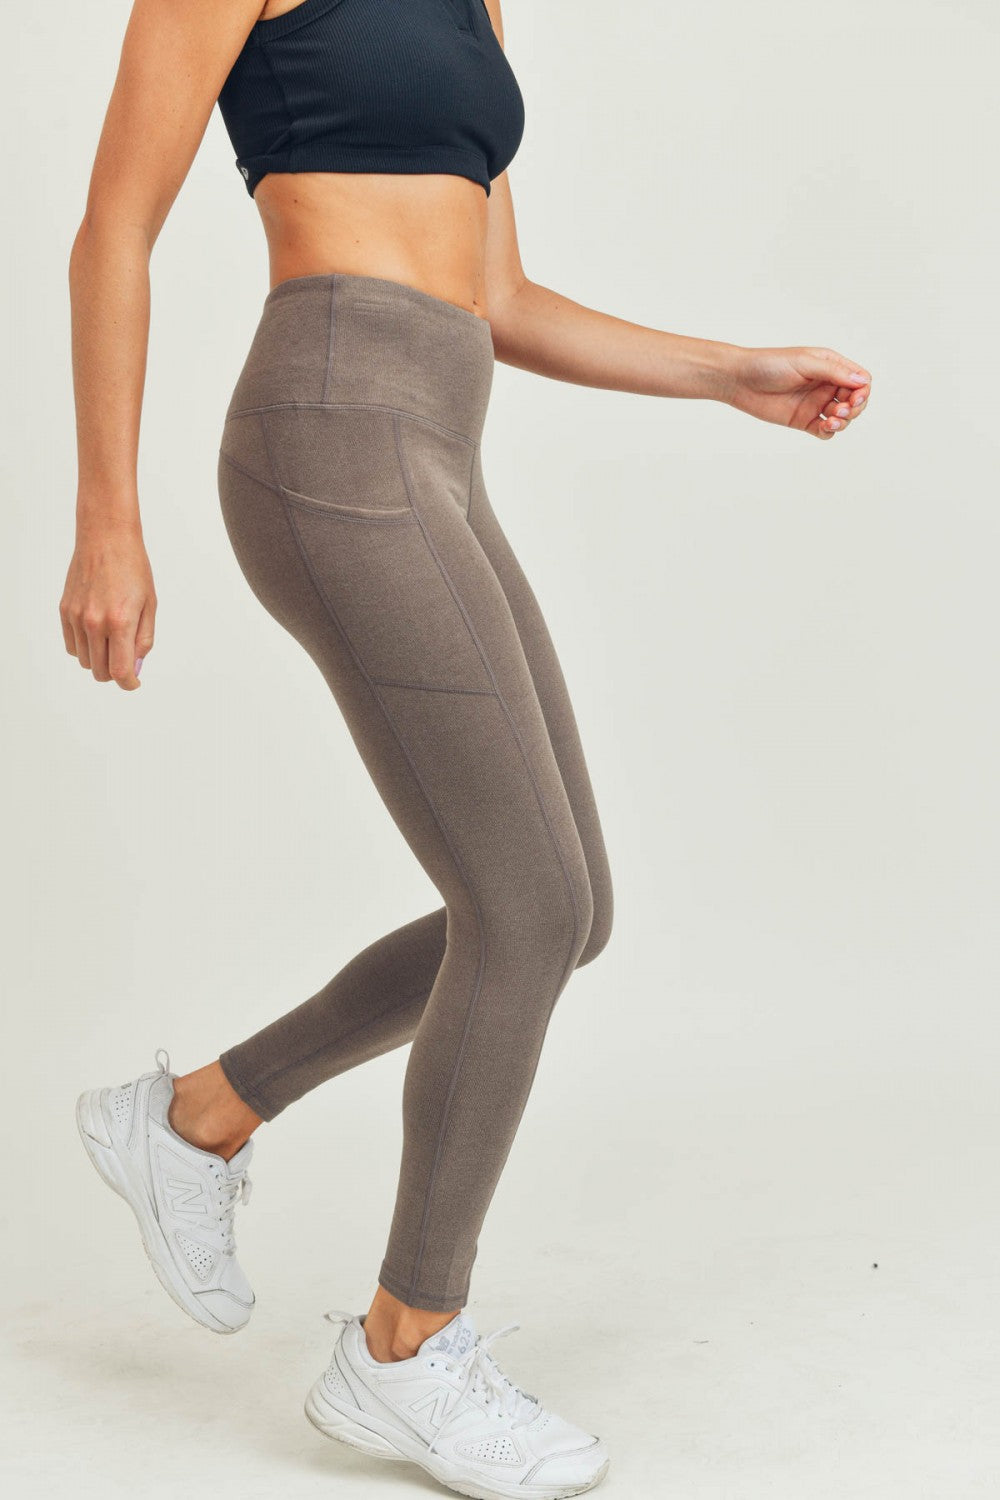 Yoga Pants for Women with Back Pocket Running Workout Leggings Exercise  Leggings for Women High Waist